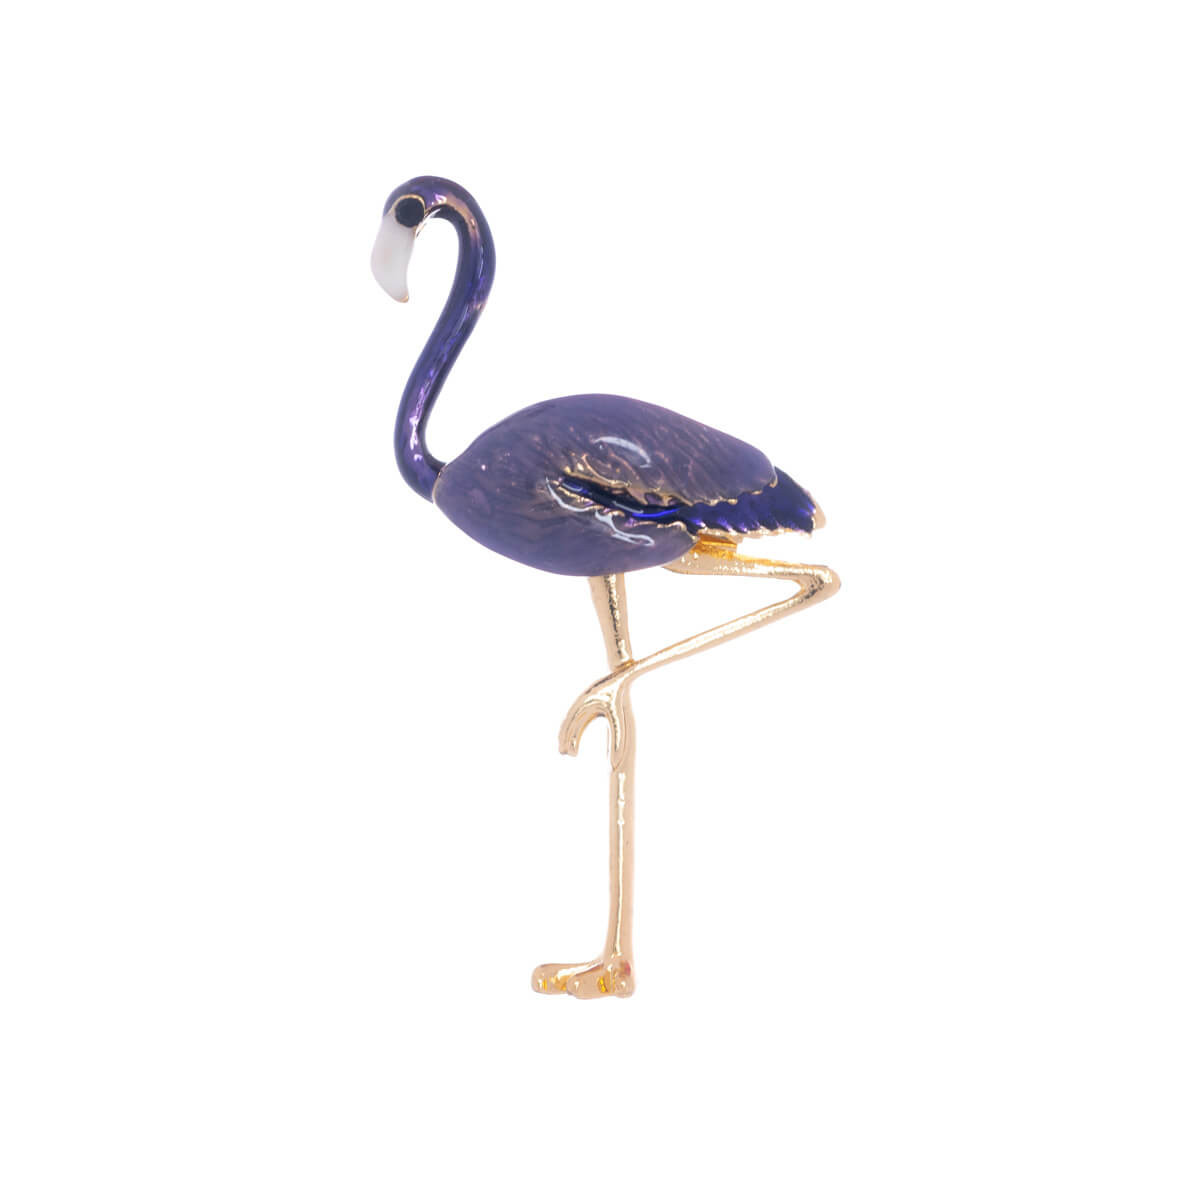 Flamingo brooch